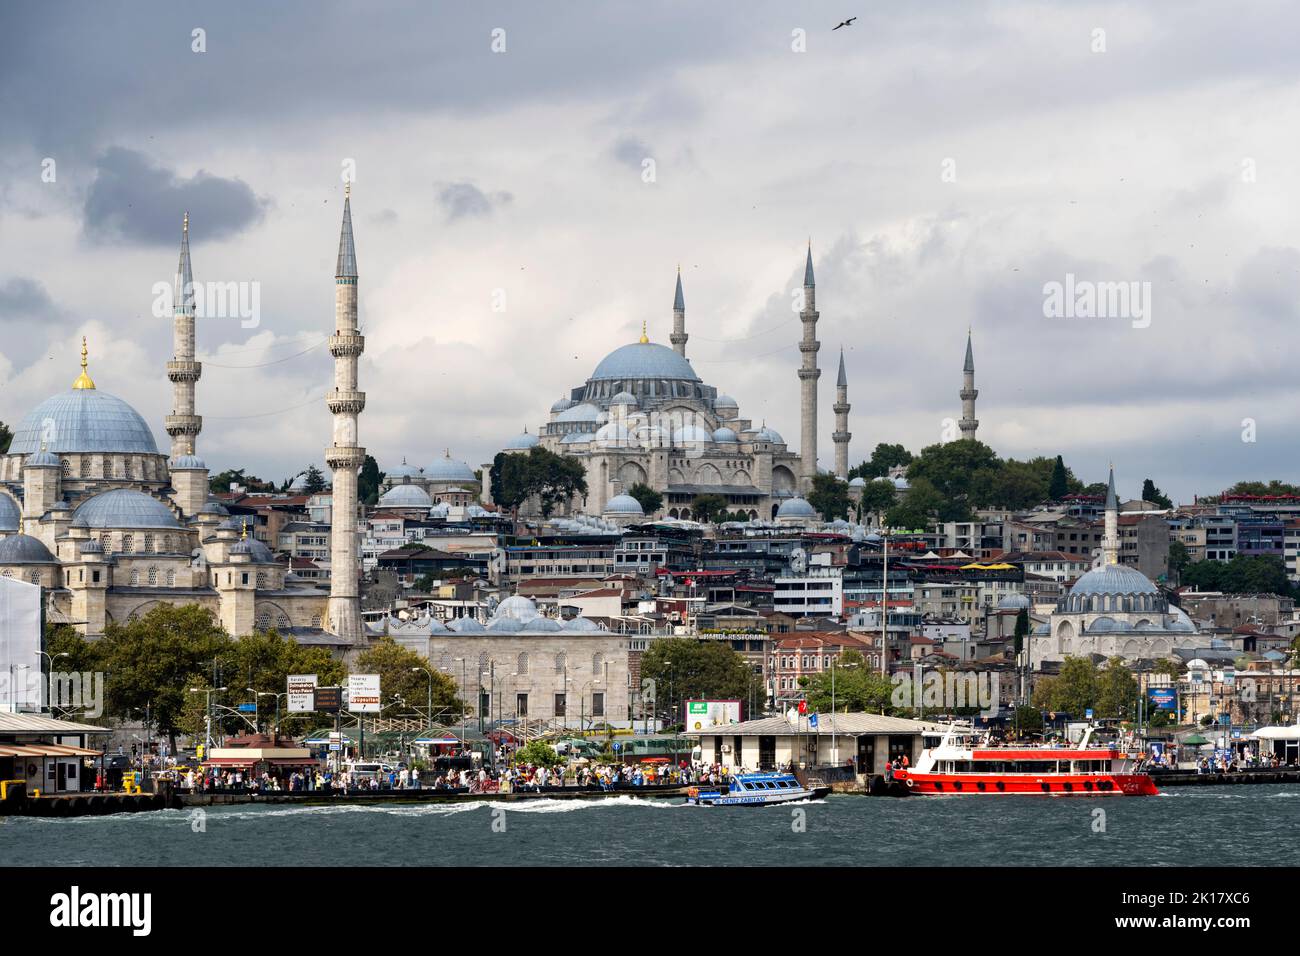 Türkei, Istanbul, Eminönü, Pier der Fährschiffe, Links die Minarette der Yeni Cami, am Hügel die Süleymaniye-Camii und rechts unten die Rüstem-Pasa-CA Foto Stock